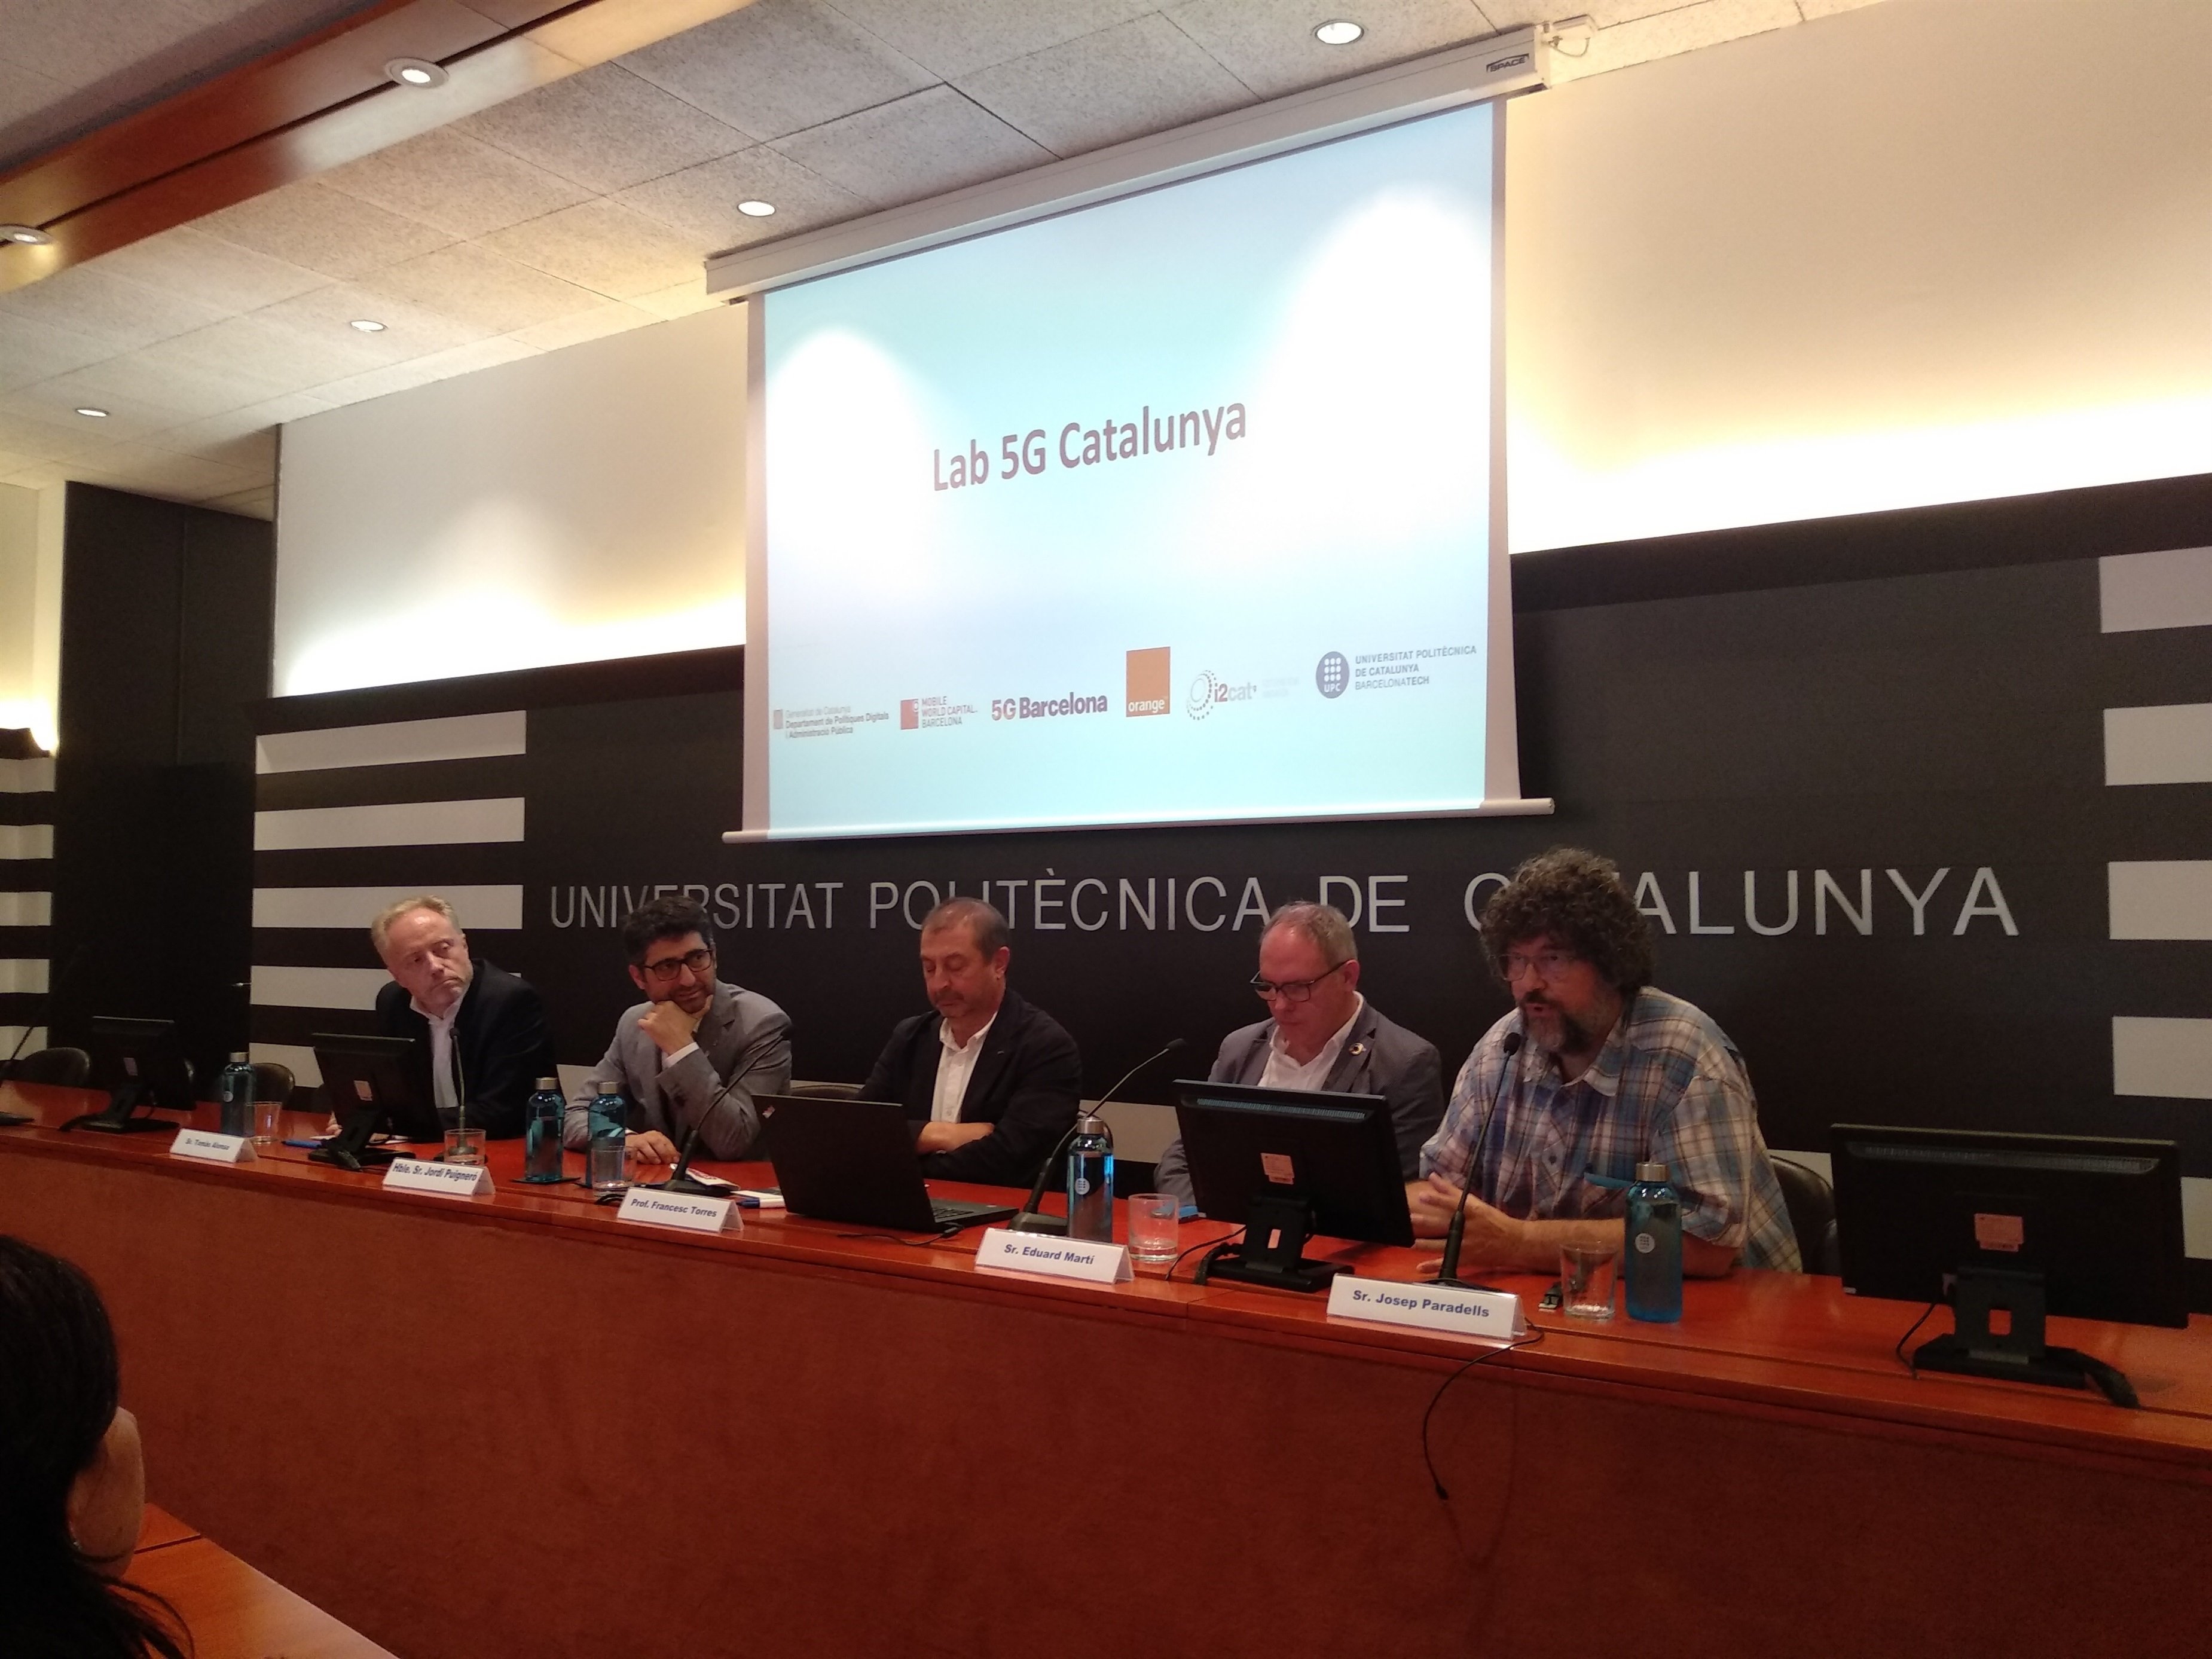 Catalunya tendrá el primer laboratorio abierto de 5G de Europa